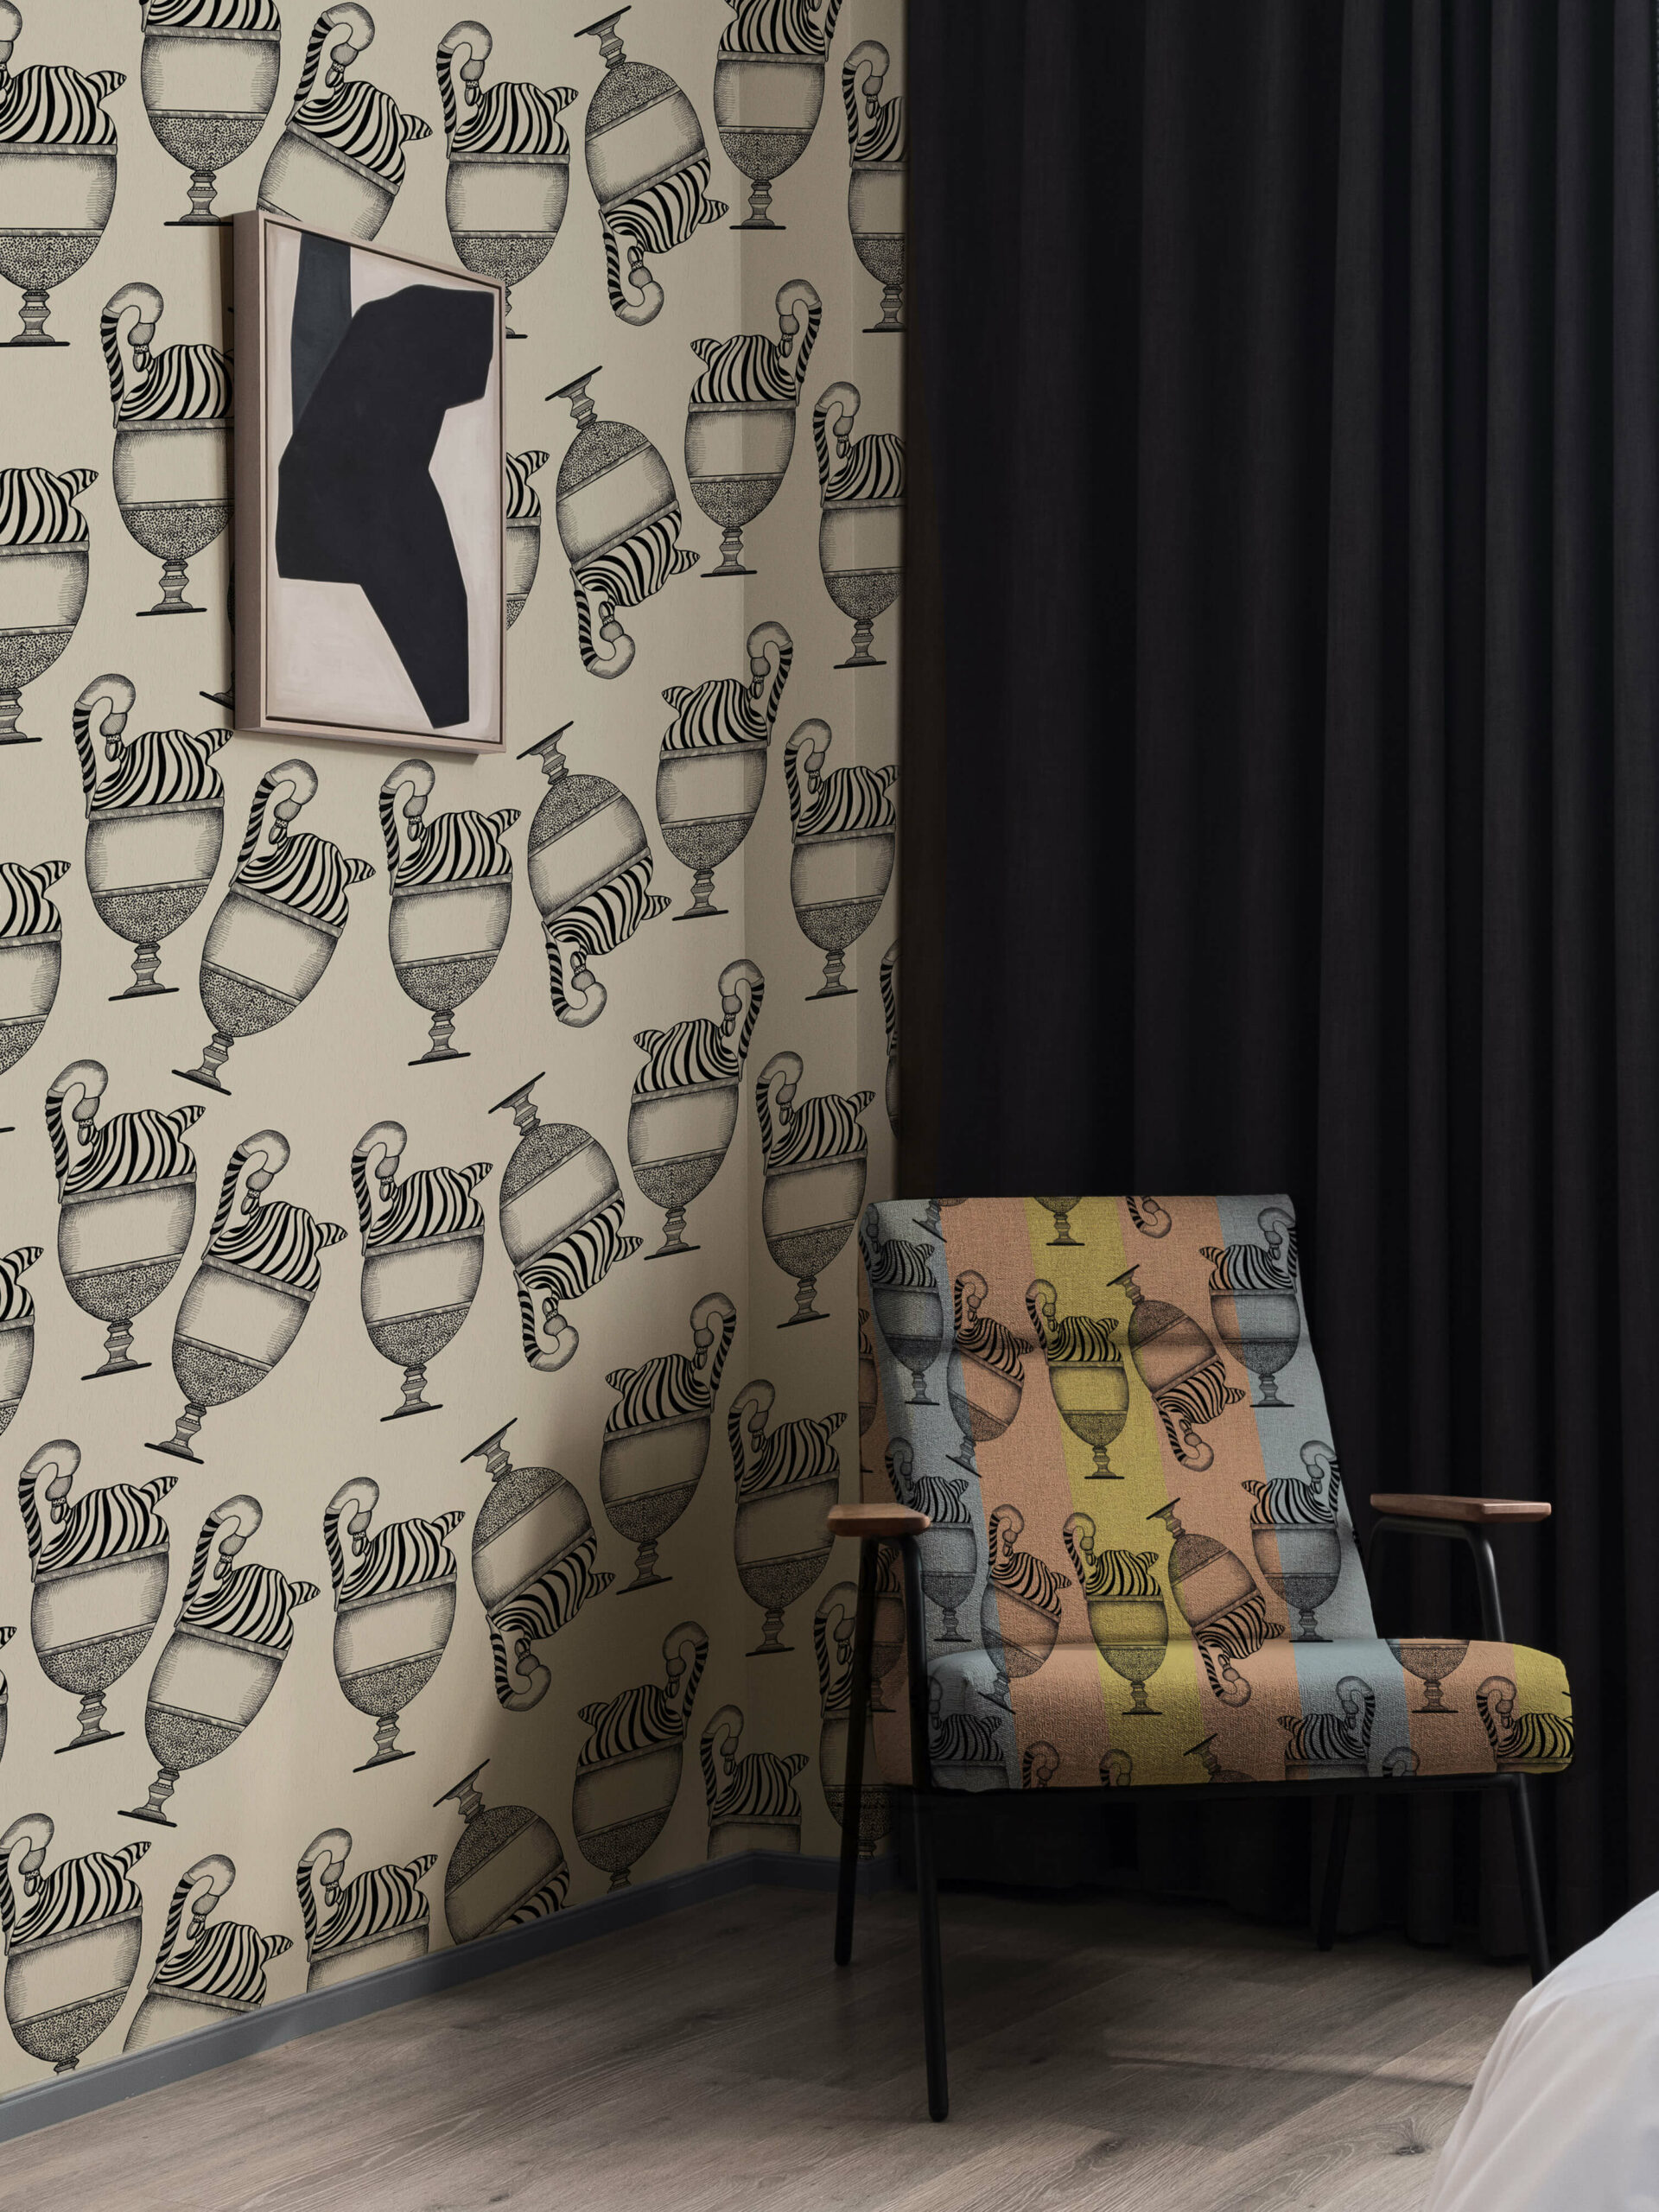 Wallpaper-Fontana-zebrato-MaVoix-wallpaper-Evocative-installation